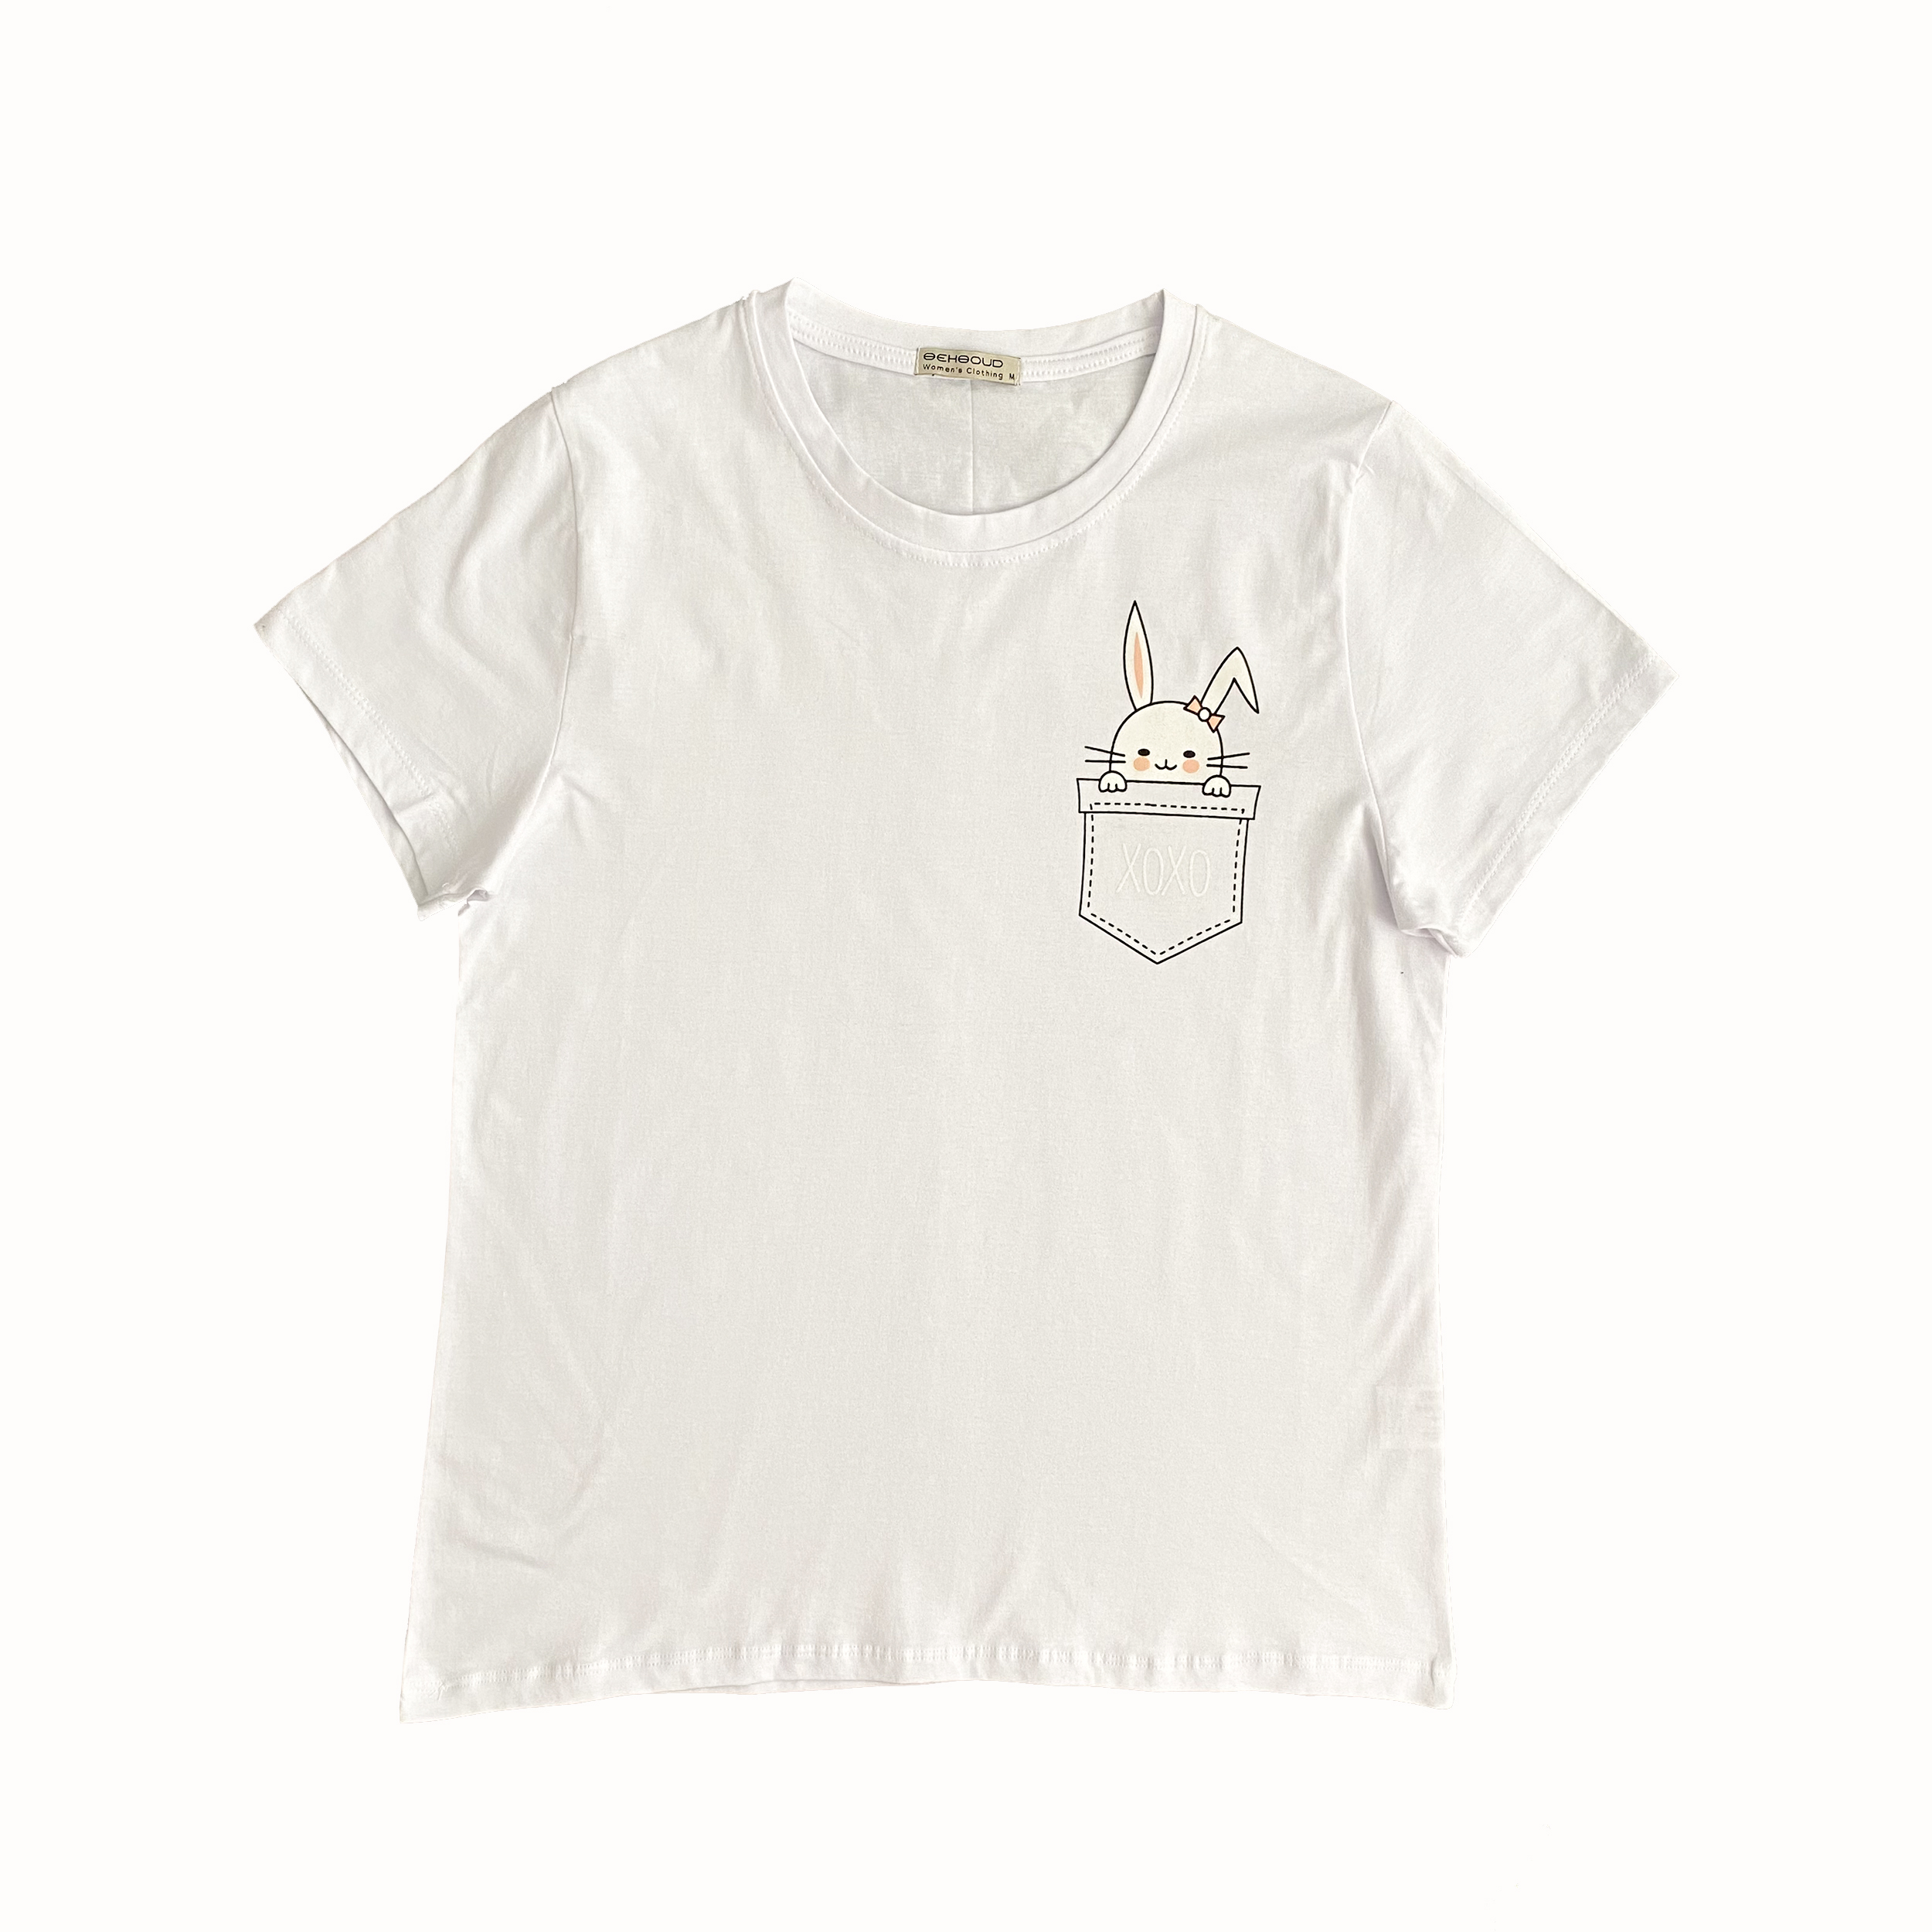 تی شرت آستین کوتاه زنانه مدل خرگوشی کد 702151 رنگ سفید